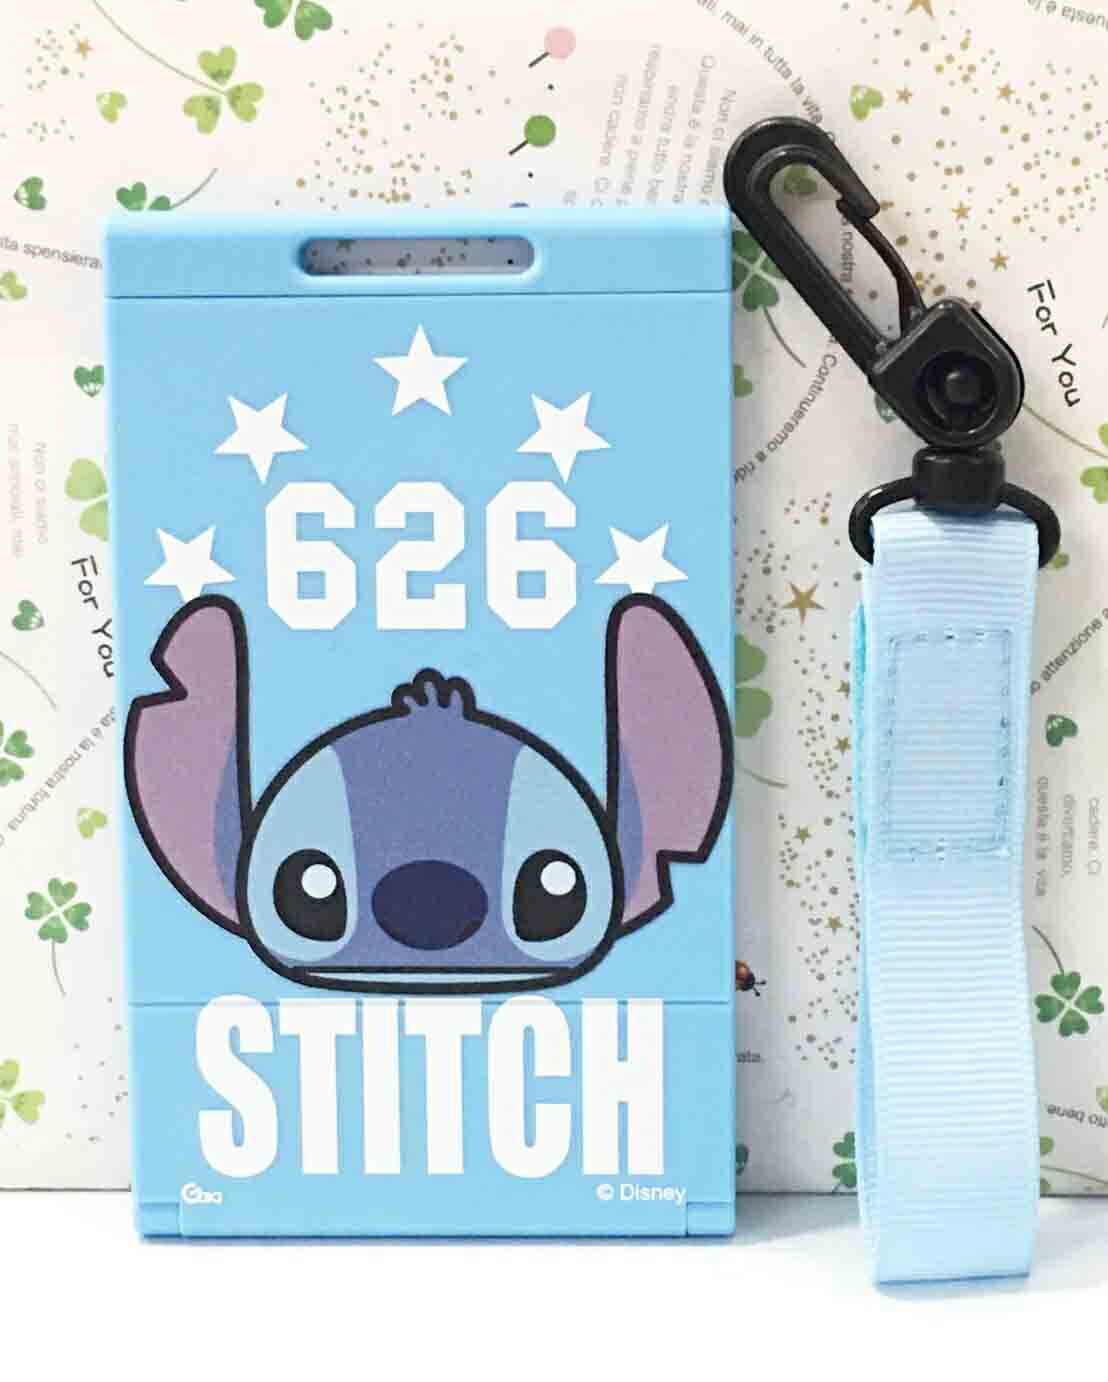 【震撼精品百貨】Stitch 星際寶貝史迪奇 史蒂奇卡票套&手機座#81001 震撼日式精品百貨